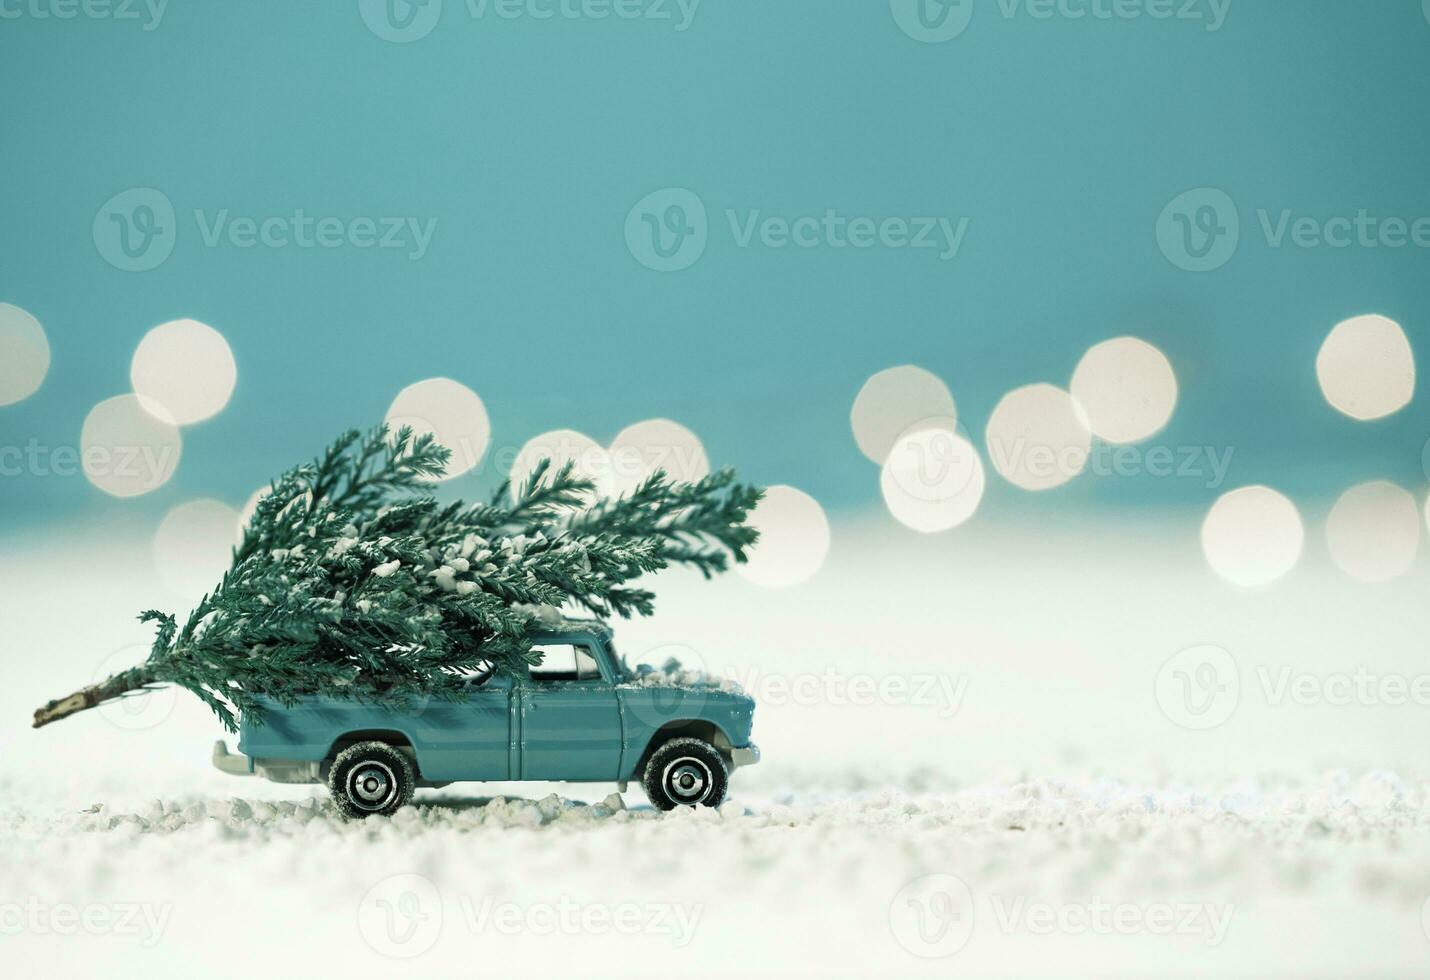 Natale, Natale vigilia, Natale albero, Natale luci, Natale regalo, Natale sfondo, Natale atmosfera, Natale ornamenti, allegro Natale, nevicando i fiocchi di neve foto